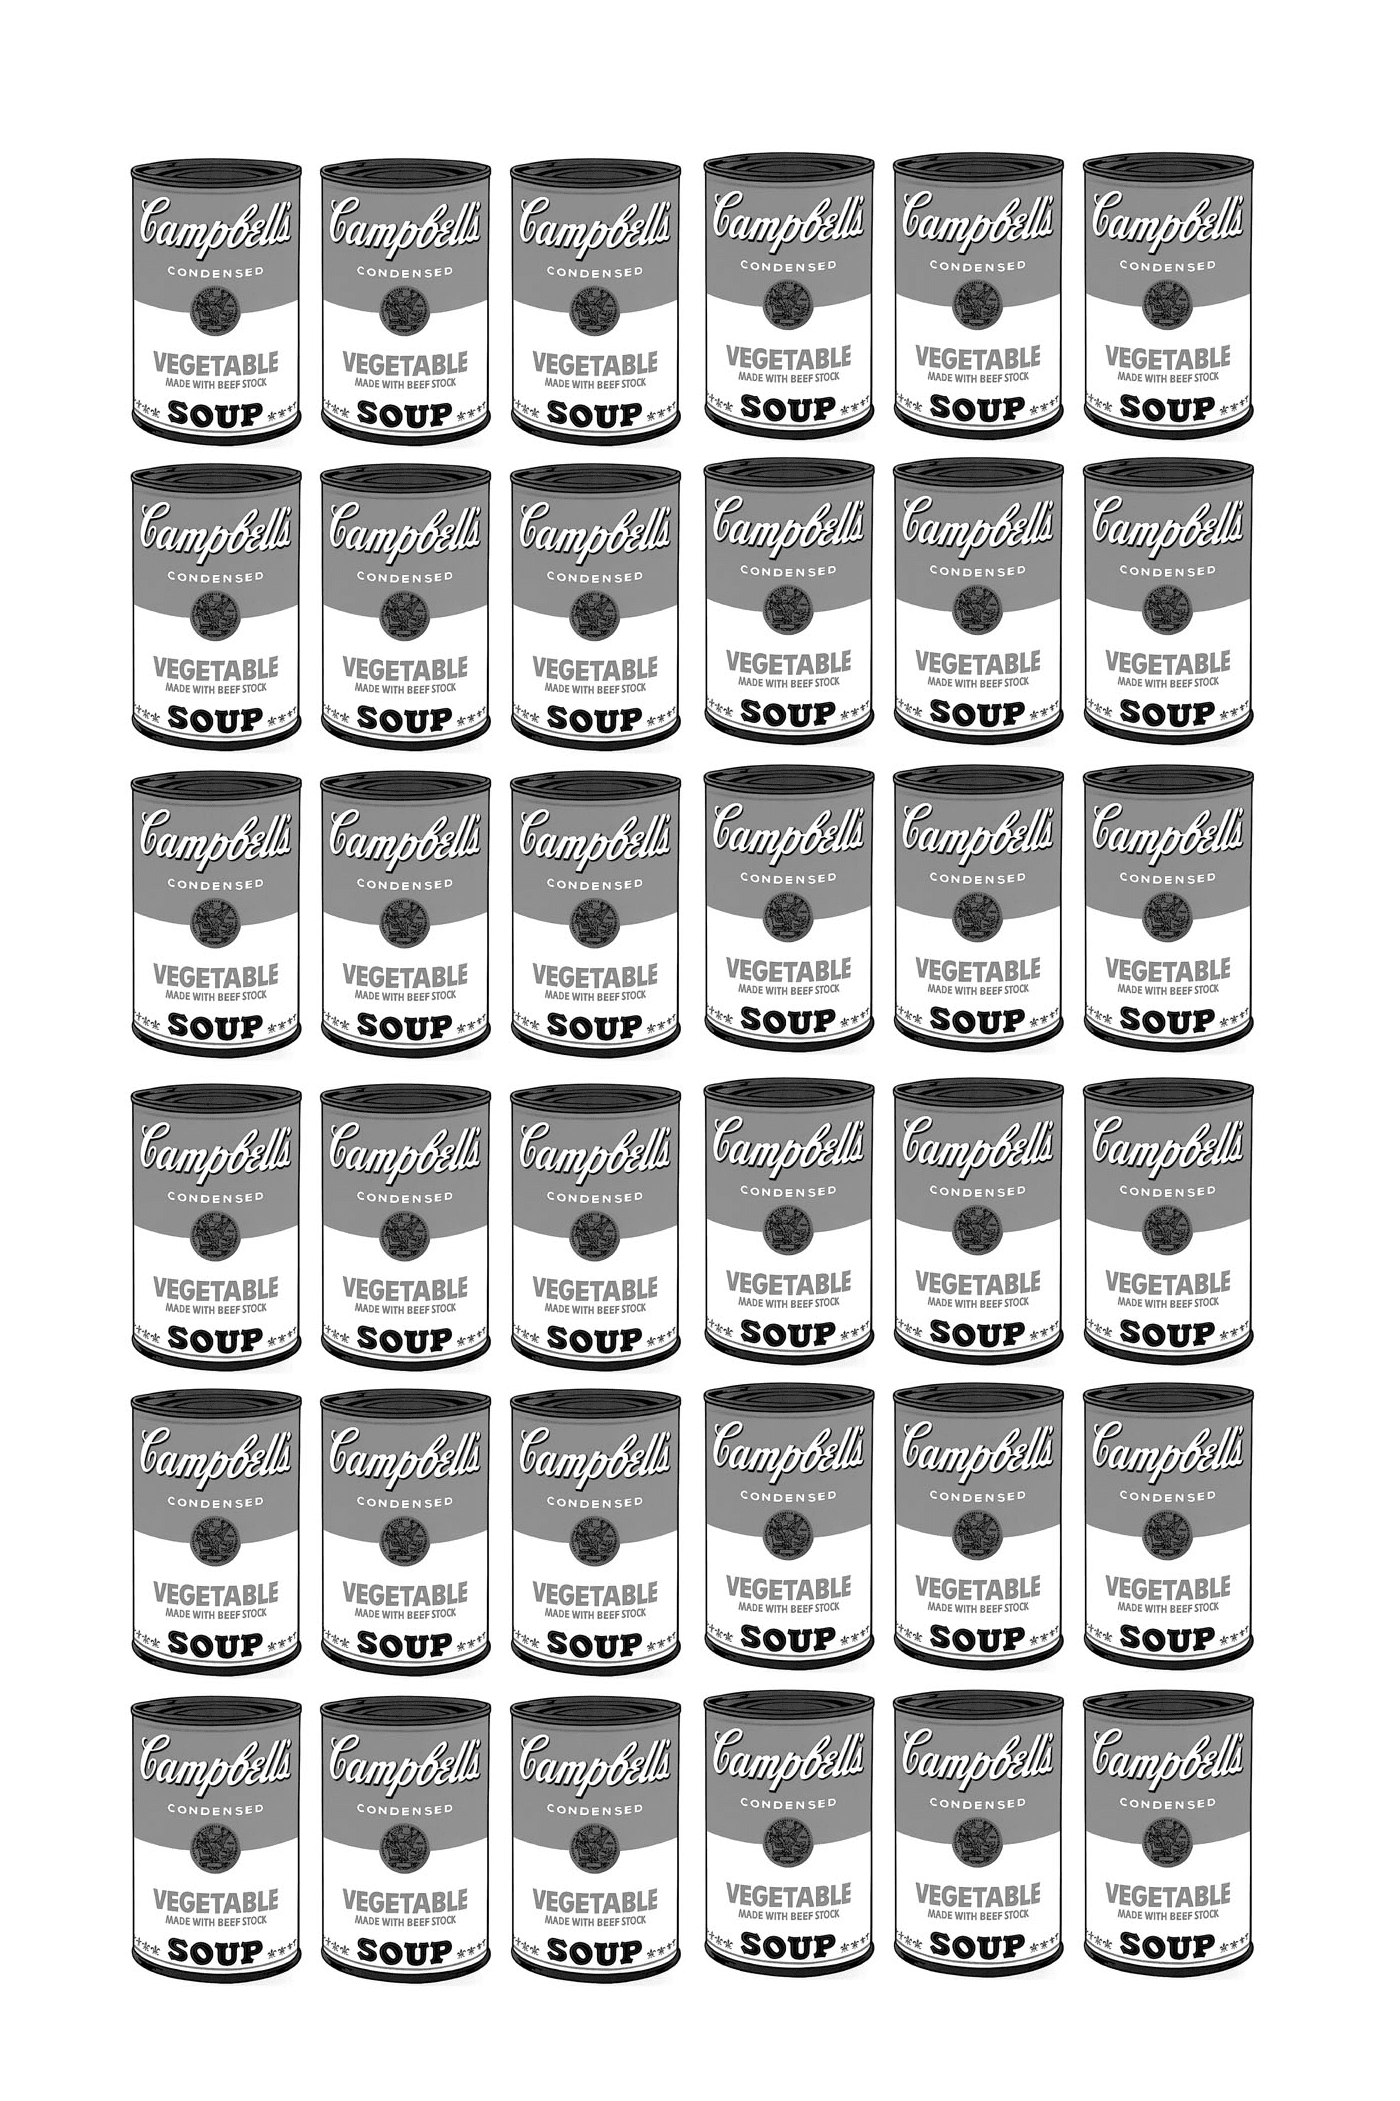  una serie de cajas de sopa Campbell totalmente en blanco y negro según Warhol 